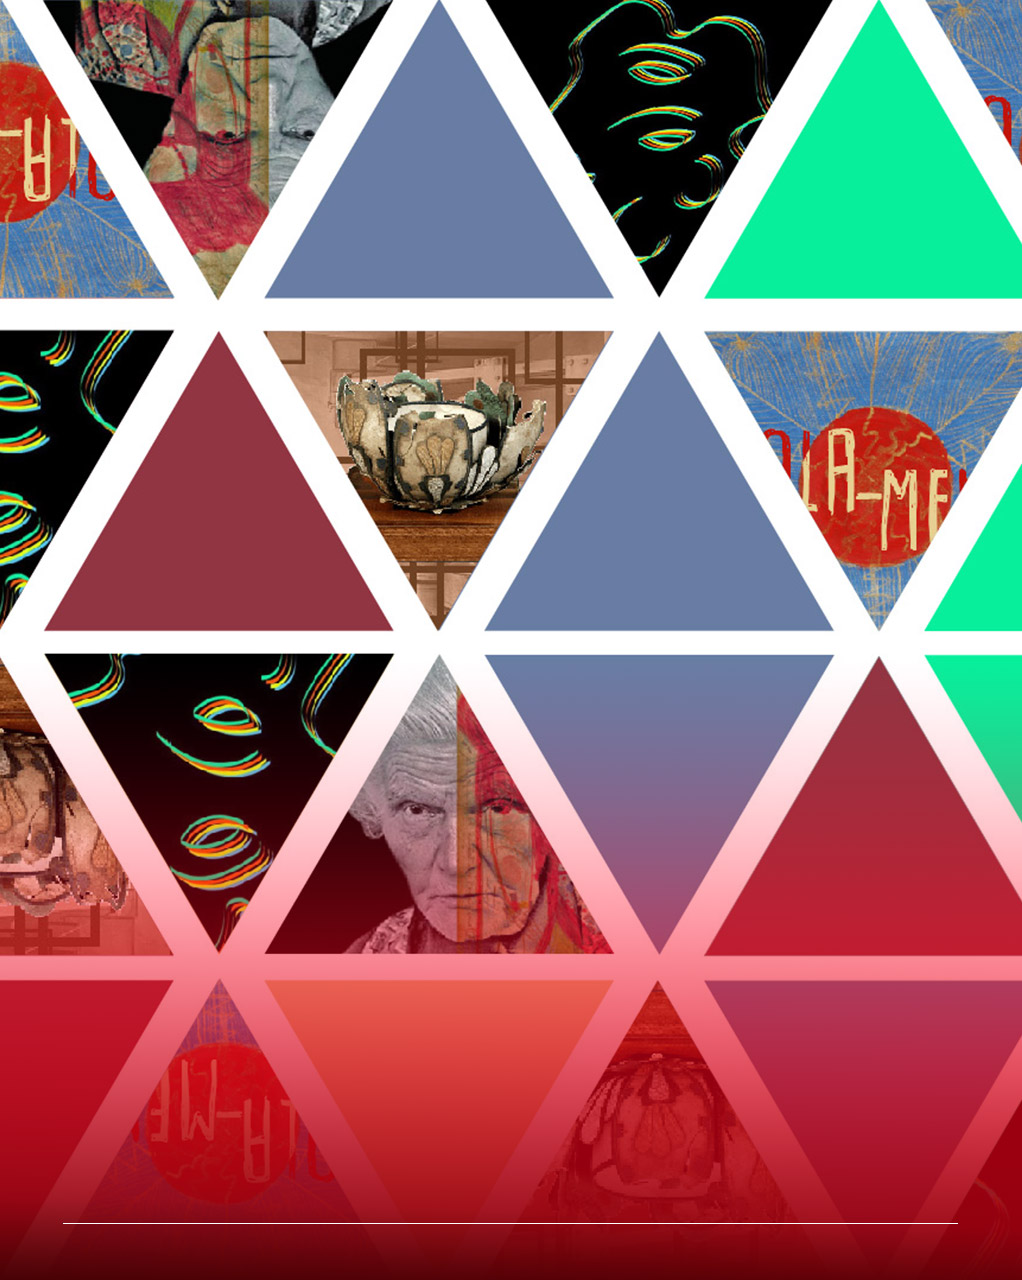 Immagine costituita da una rete di triangoli colorati o contenenti opere di art brut